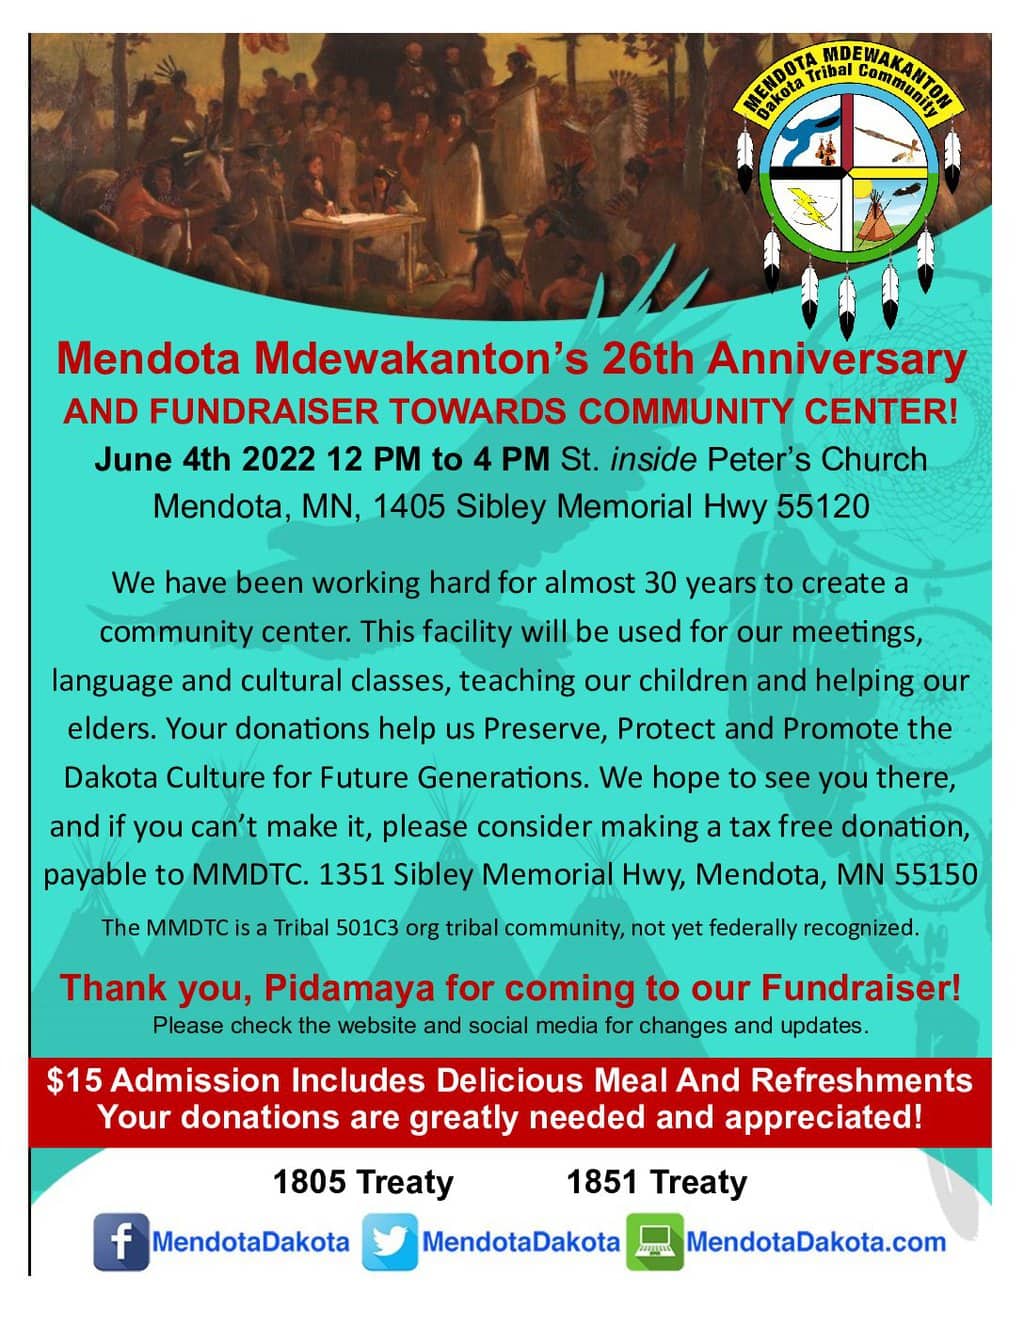 Mendota Mdewakanton's 26th Anniversary and Fundraiser